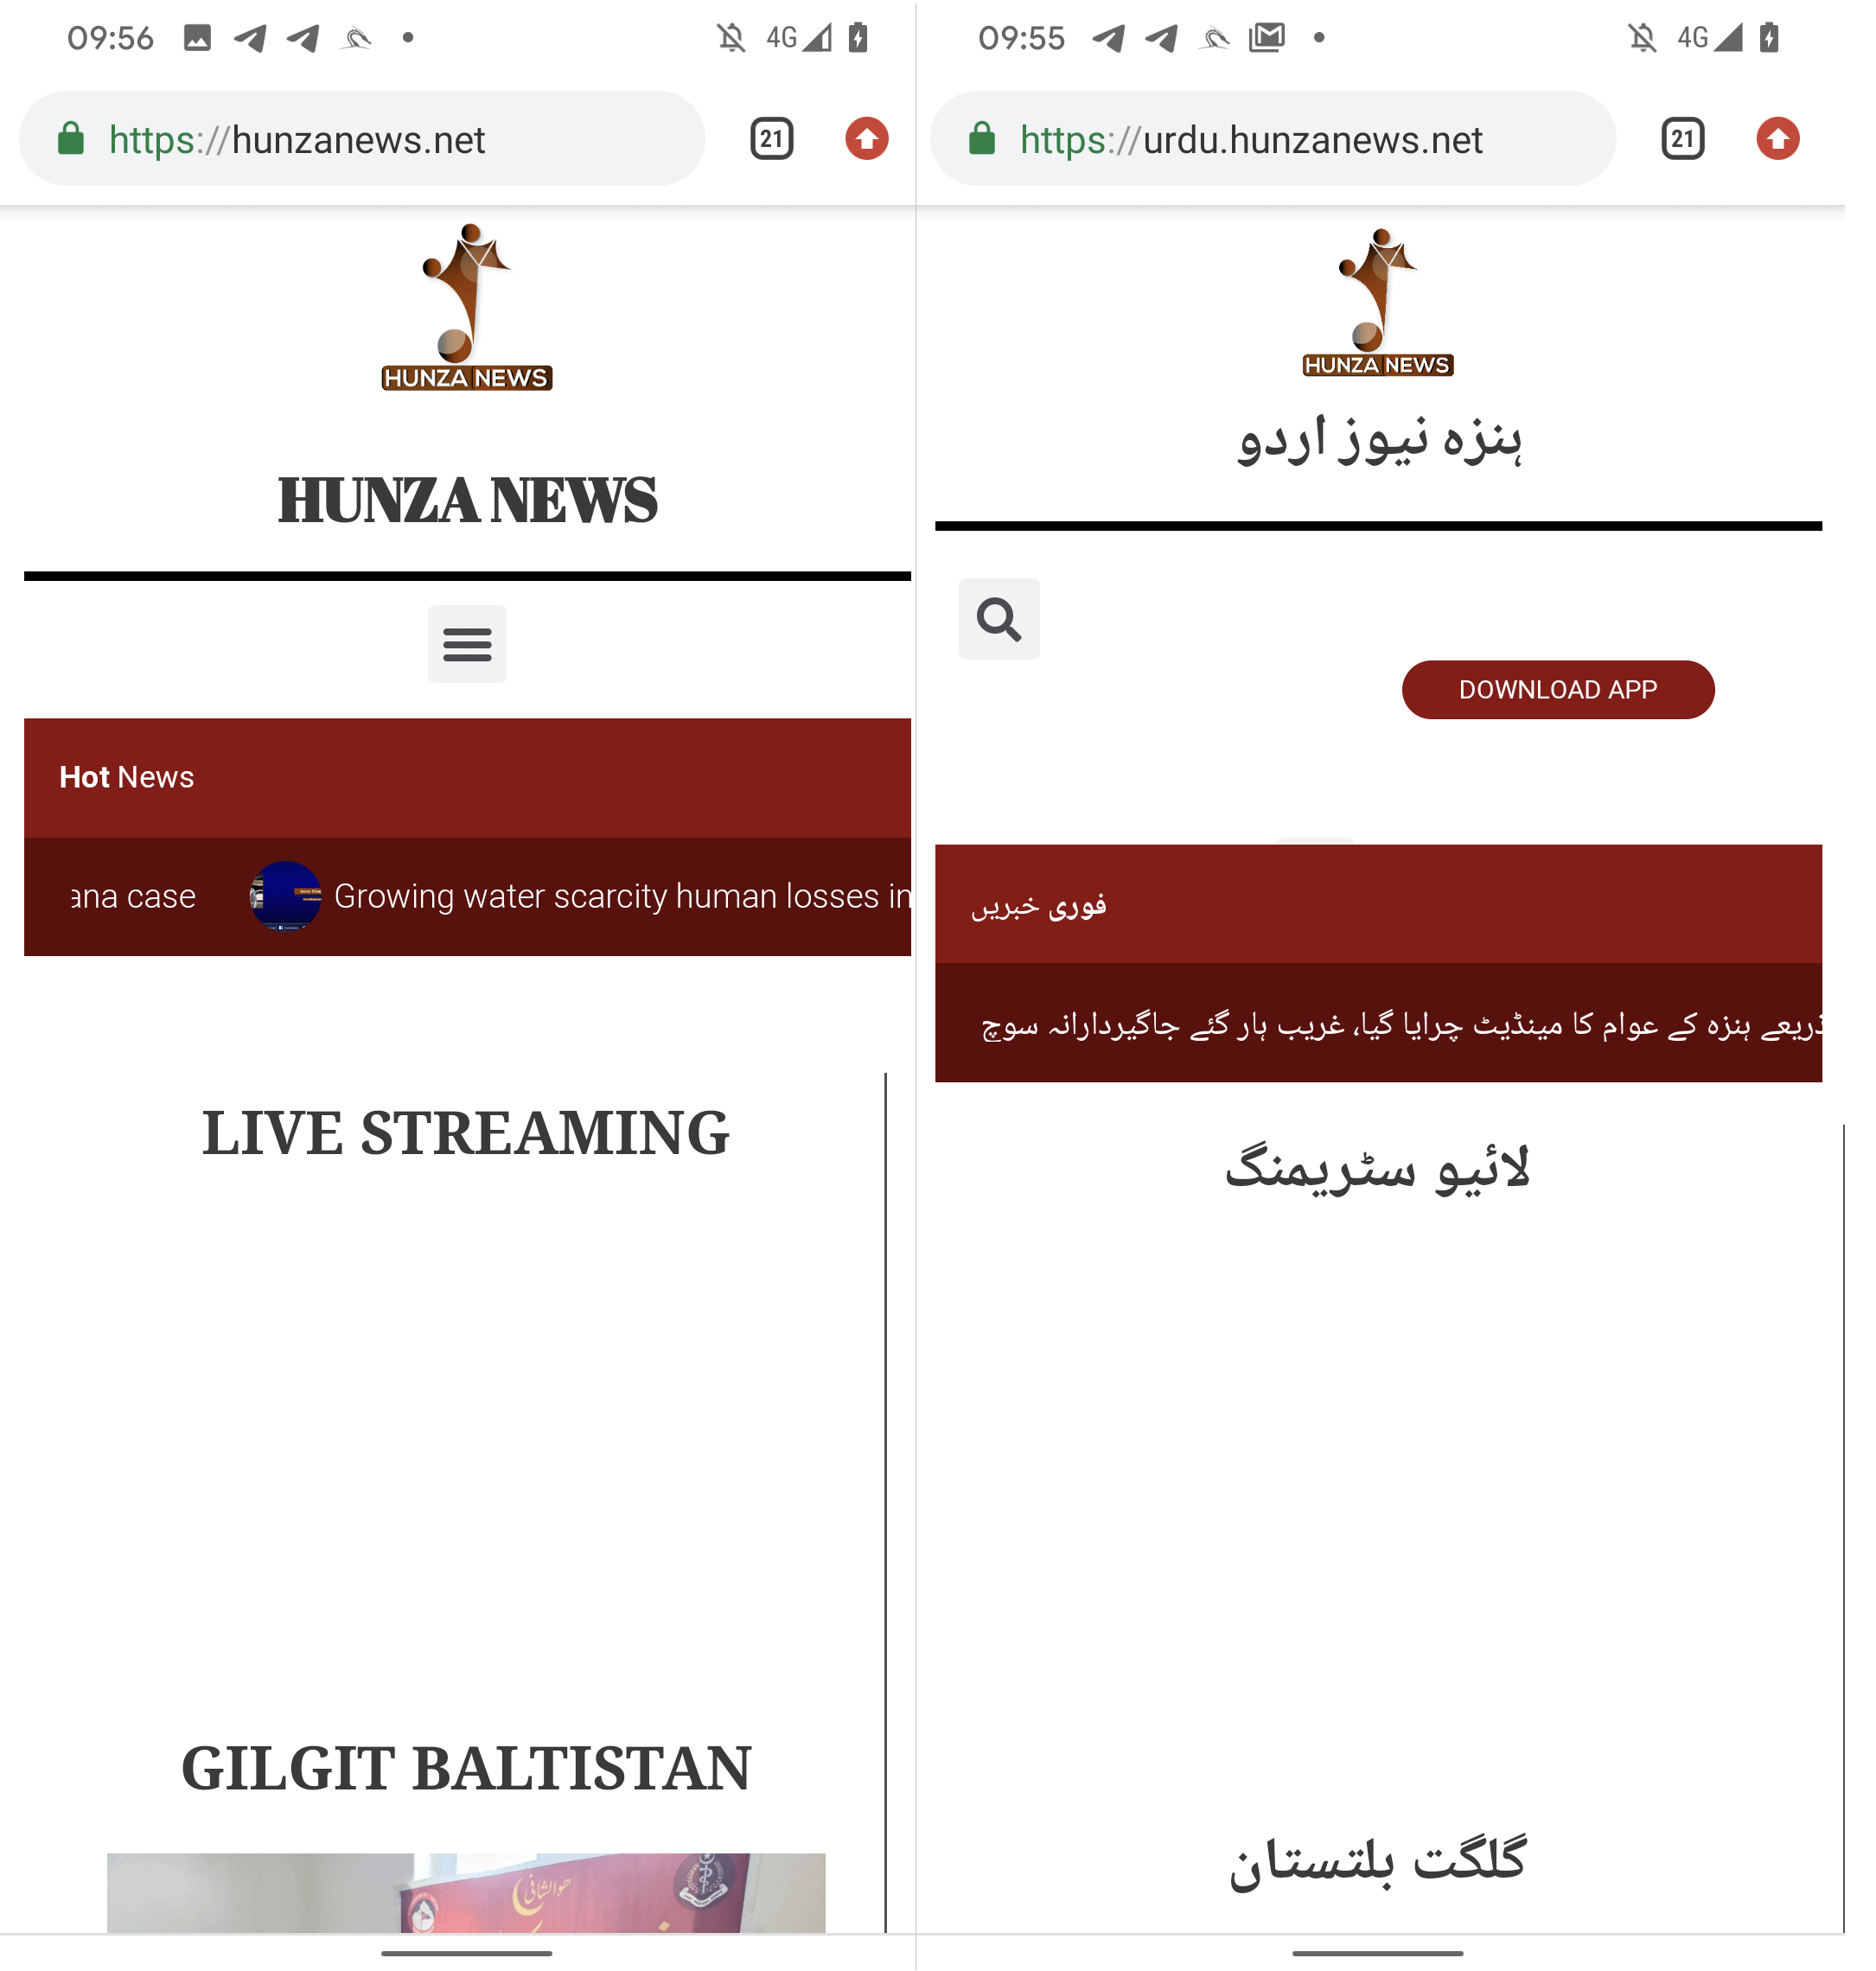 Şekil 6 İngilizce (solda) ve Urduca (sağda) versiyon Hunza News